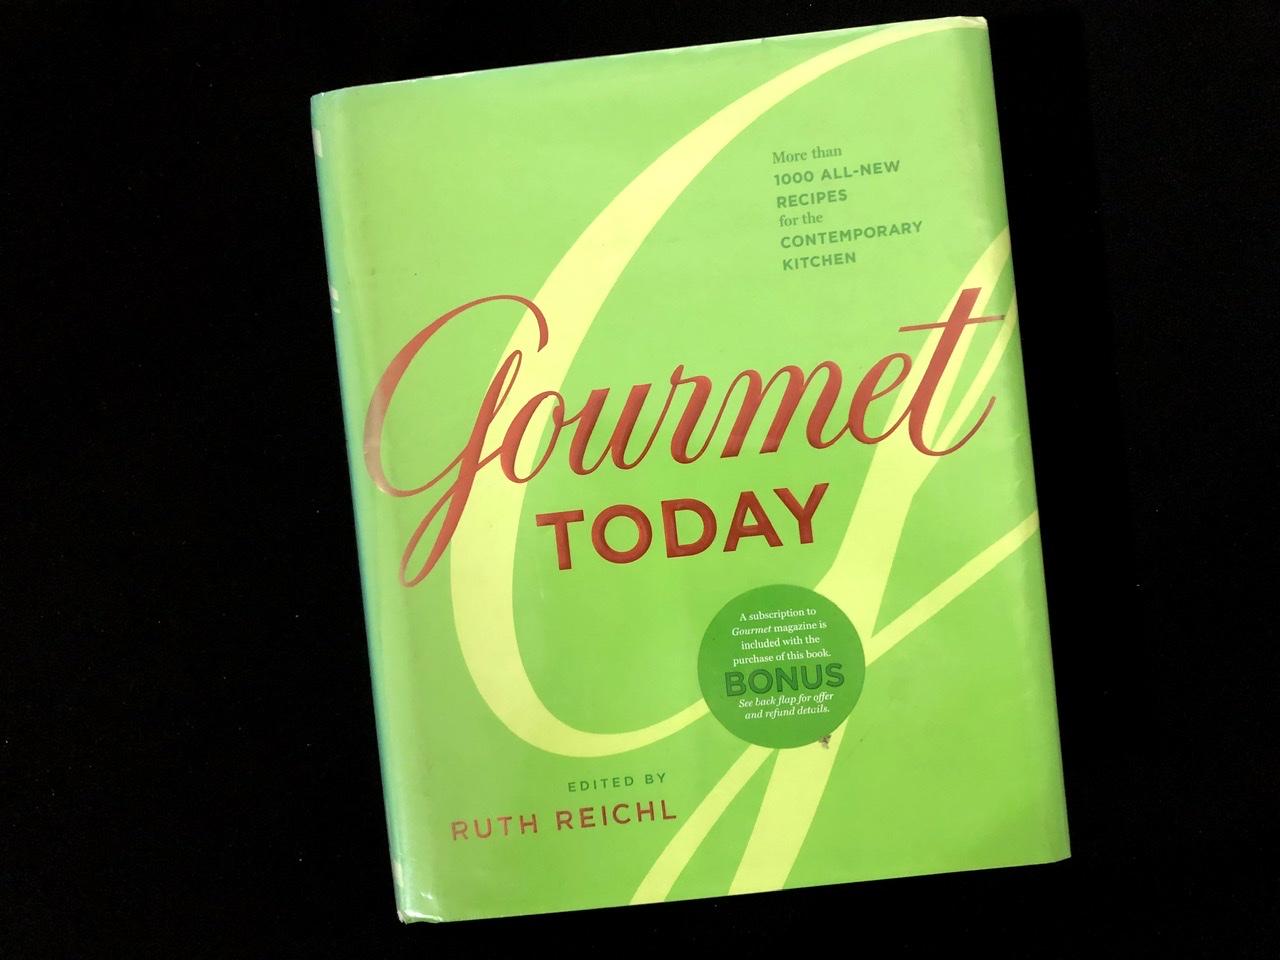 Gourmet Today cookbook